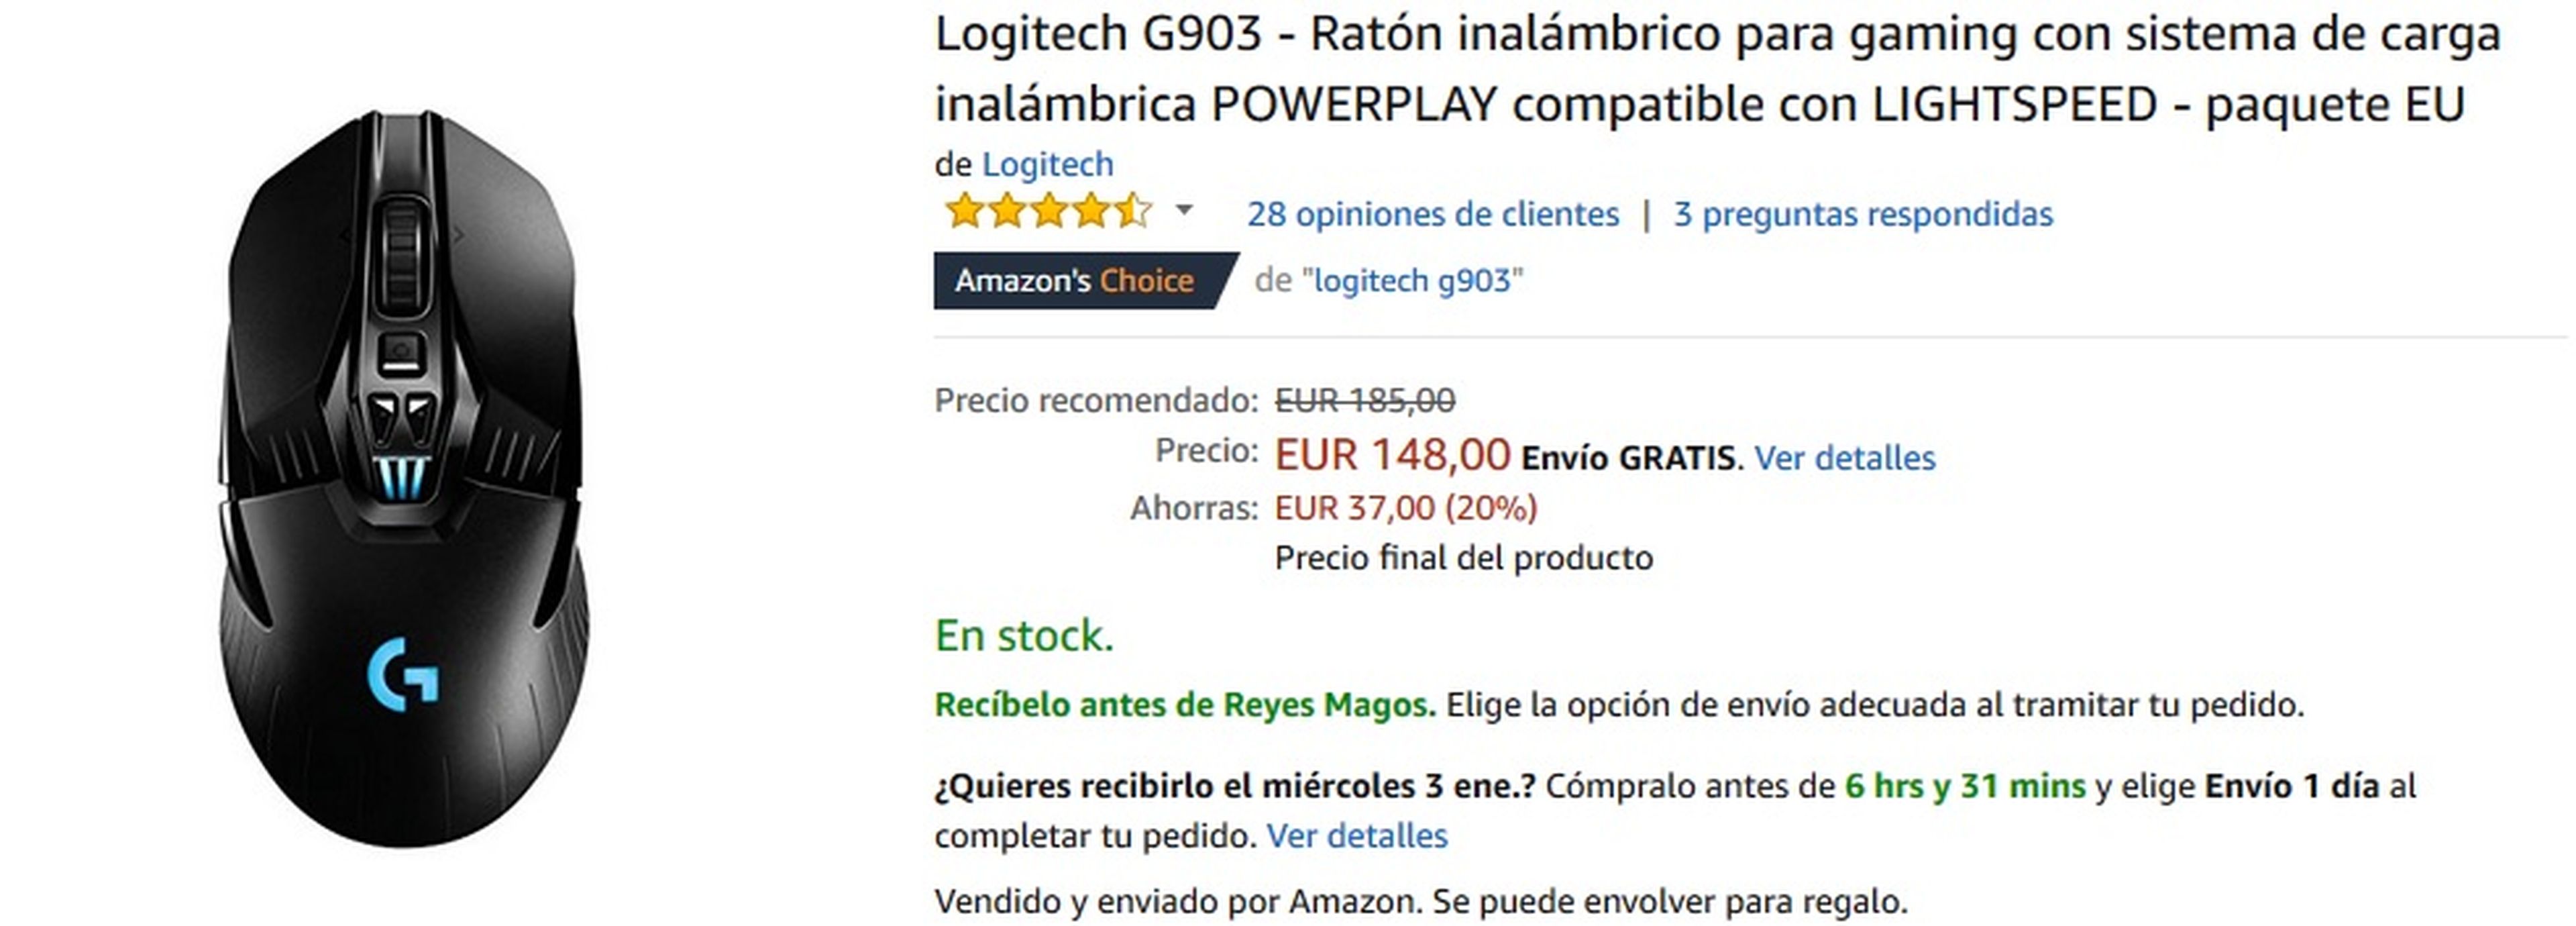 Ratón gaming Logitech G903